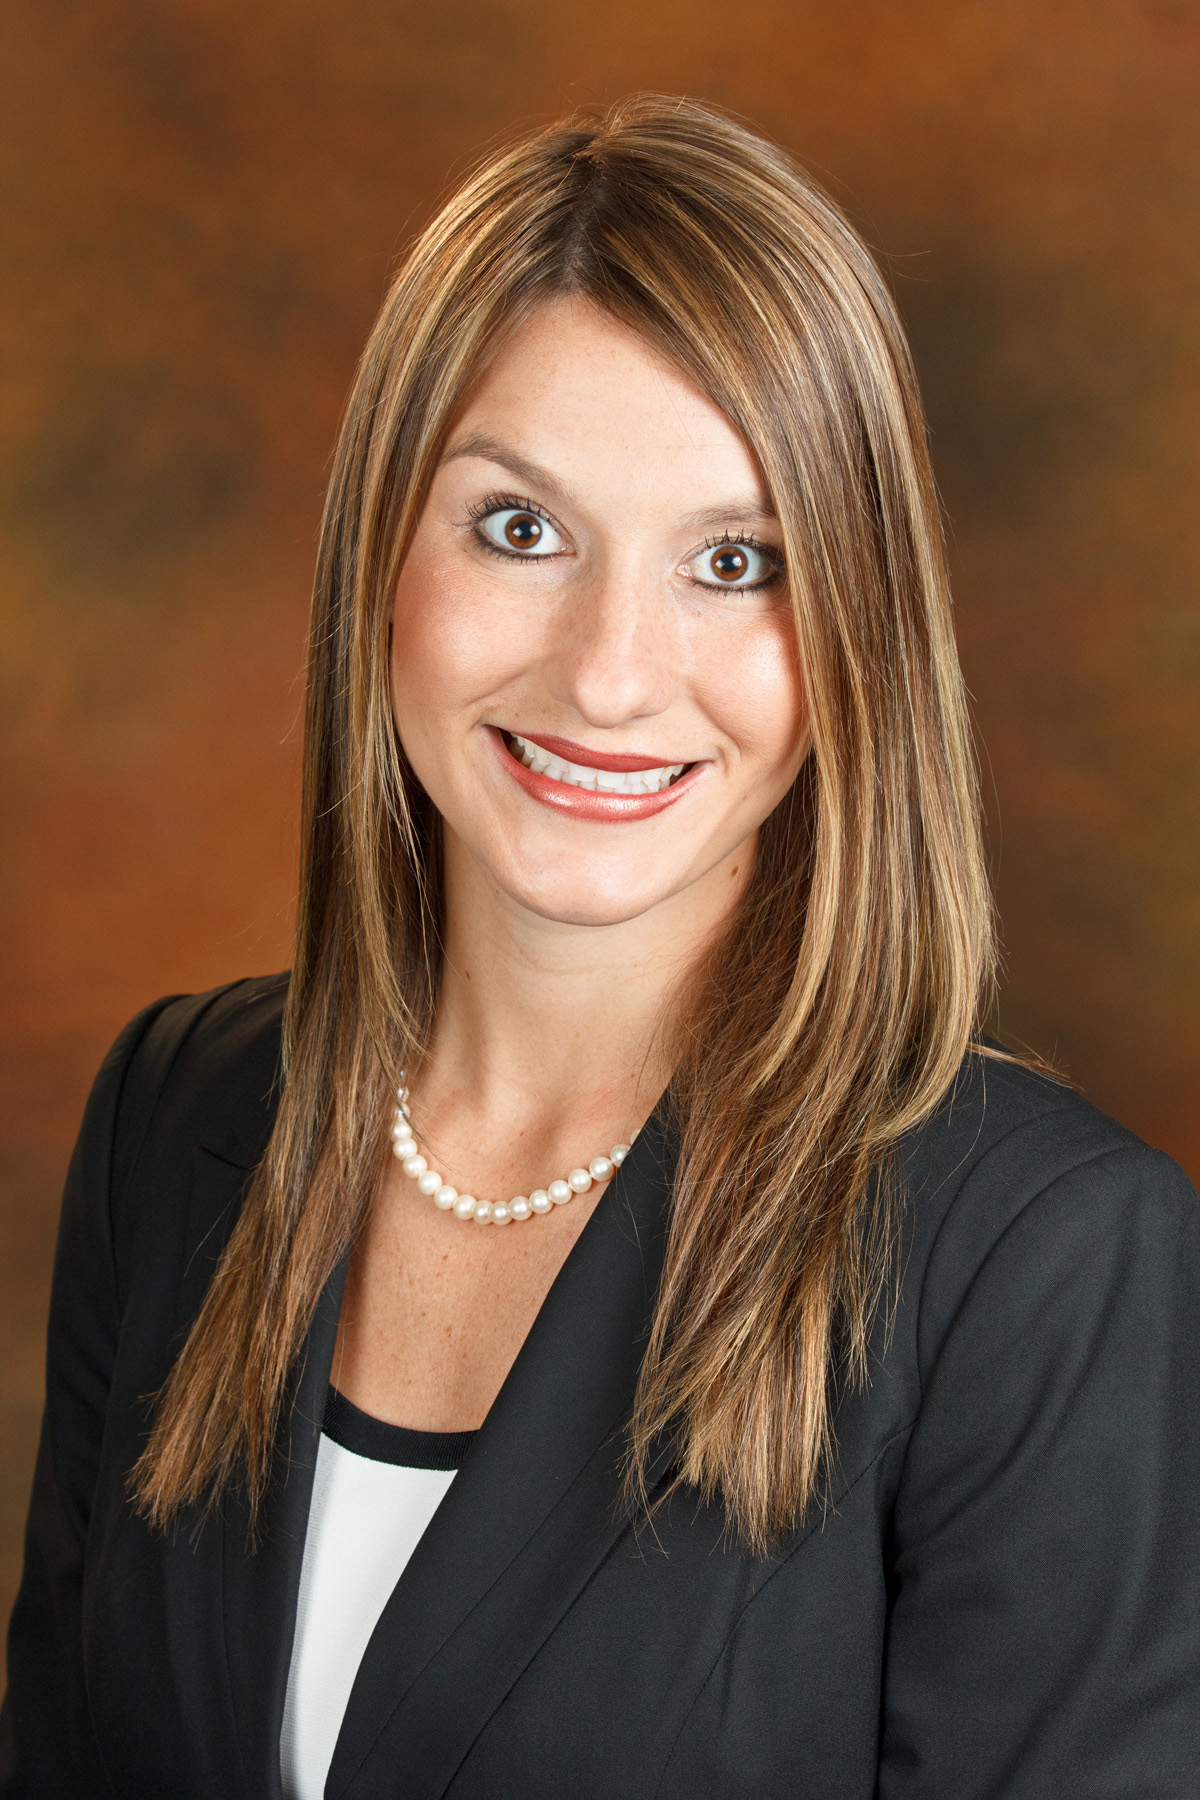 LeeAnna Covington Joins Oklahoma Farm Bureau Policy Team